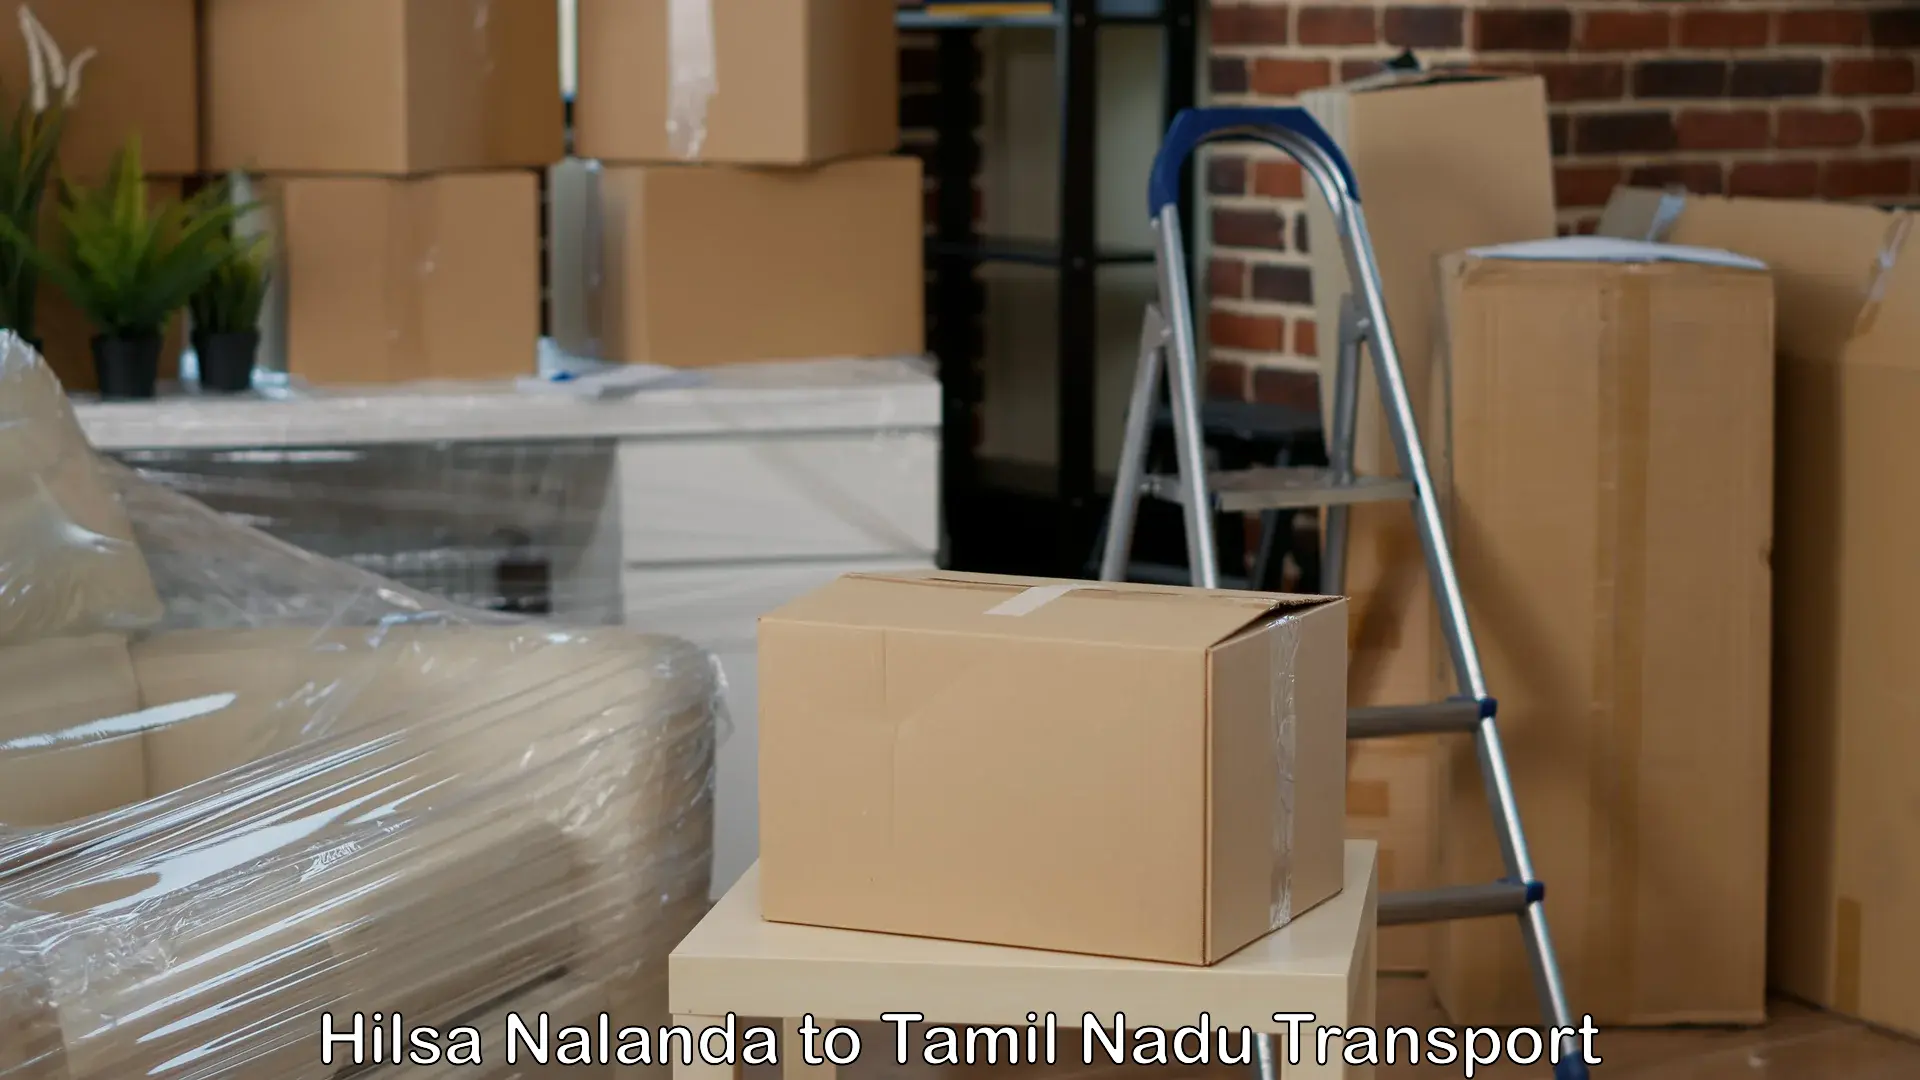 Shipping services Hilsa Nalanda to Trichy